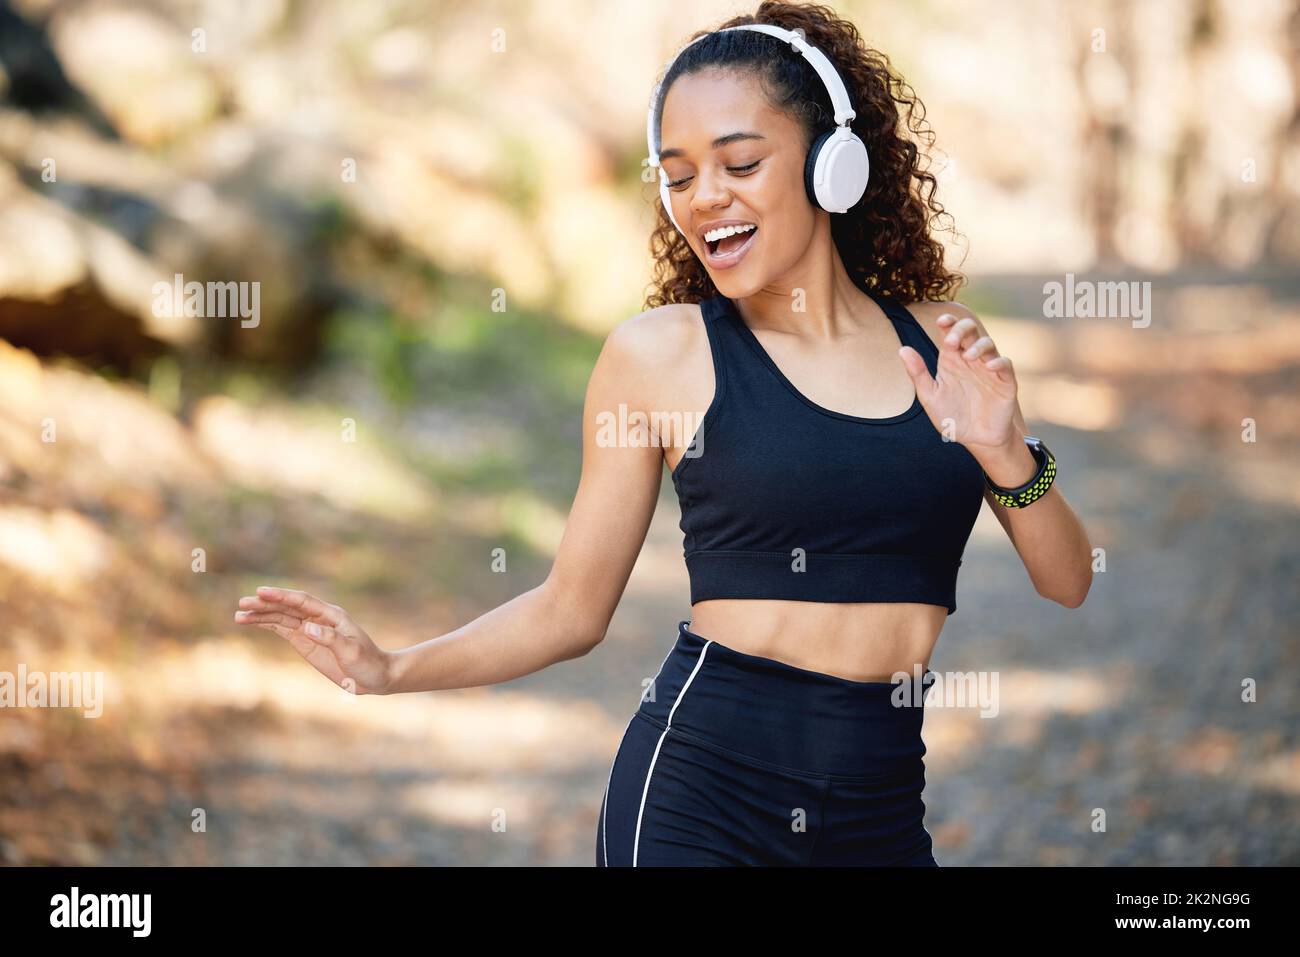 Übung kommt in vielen Formen. Aufnahme einer jungen Frau, die während eines Laufs zu fröhlicher Musik tanzt. Stockfoto